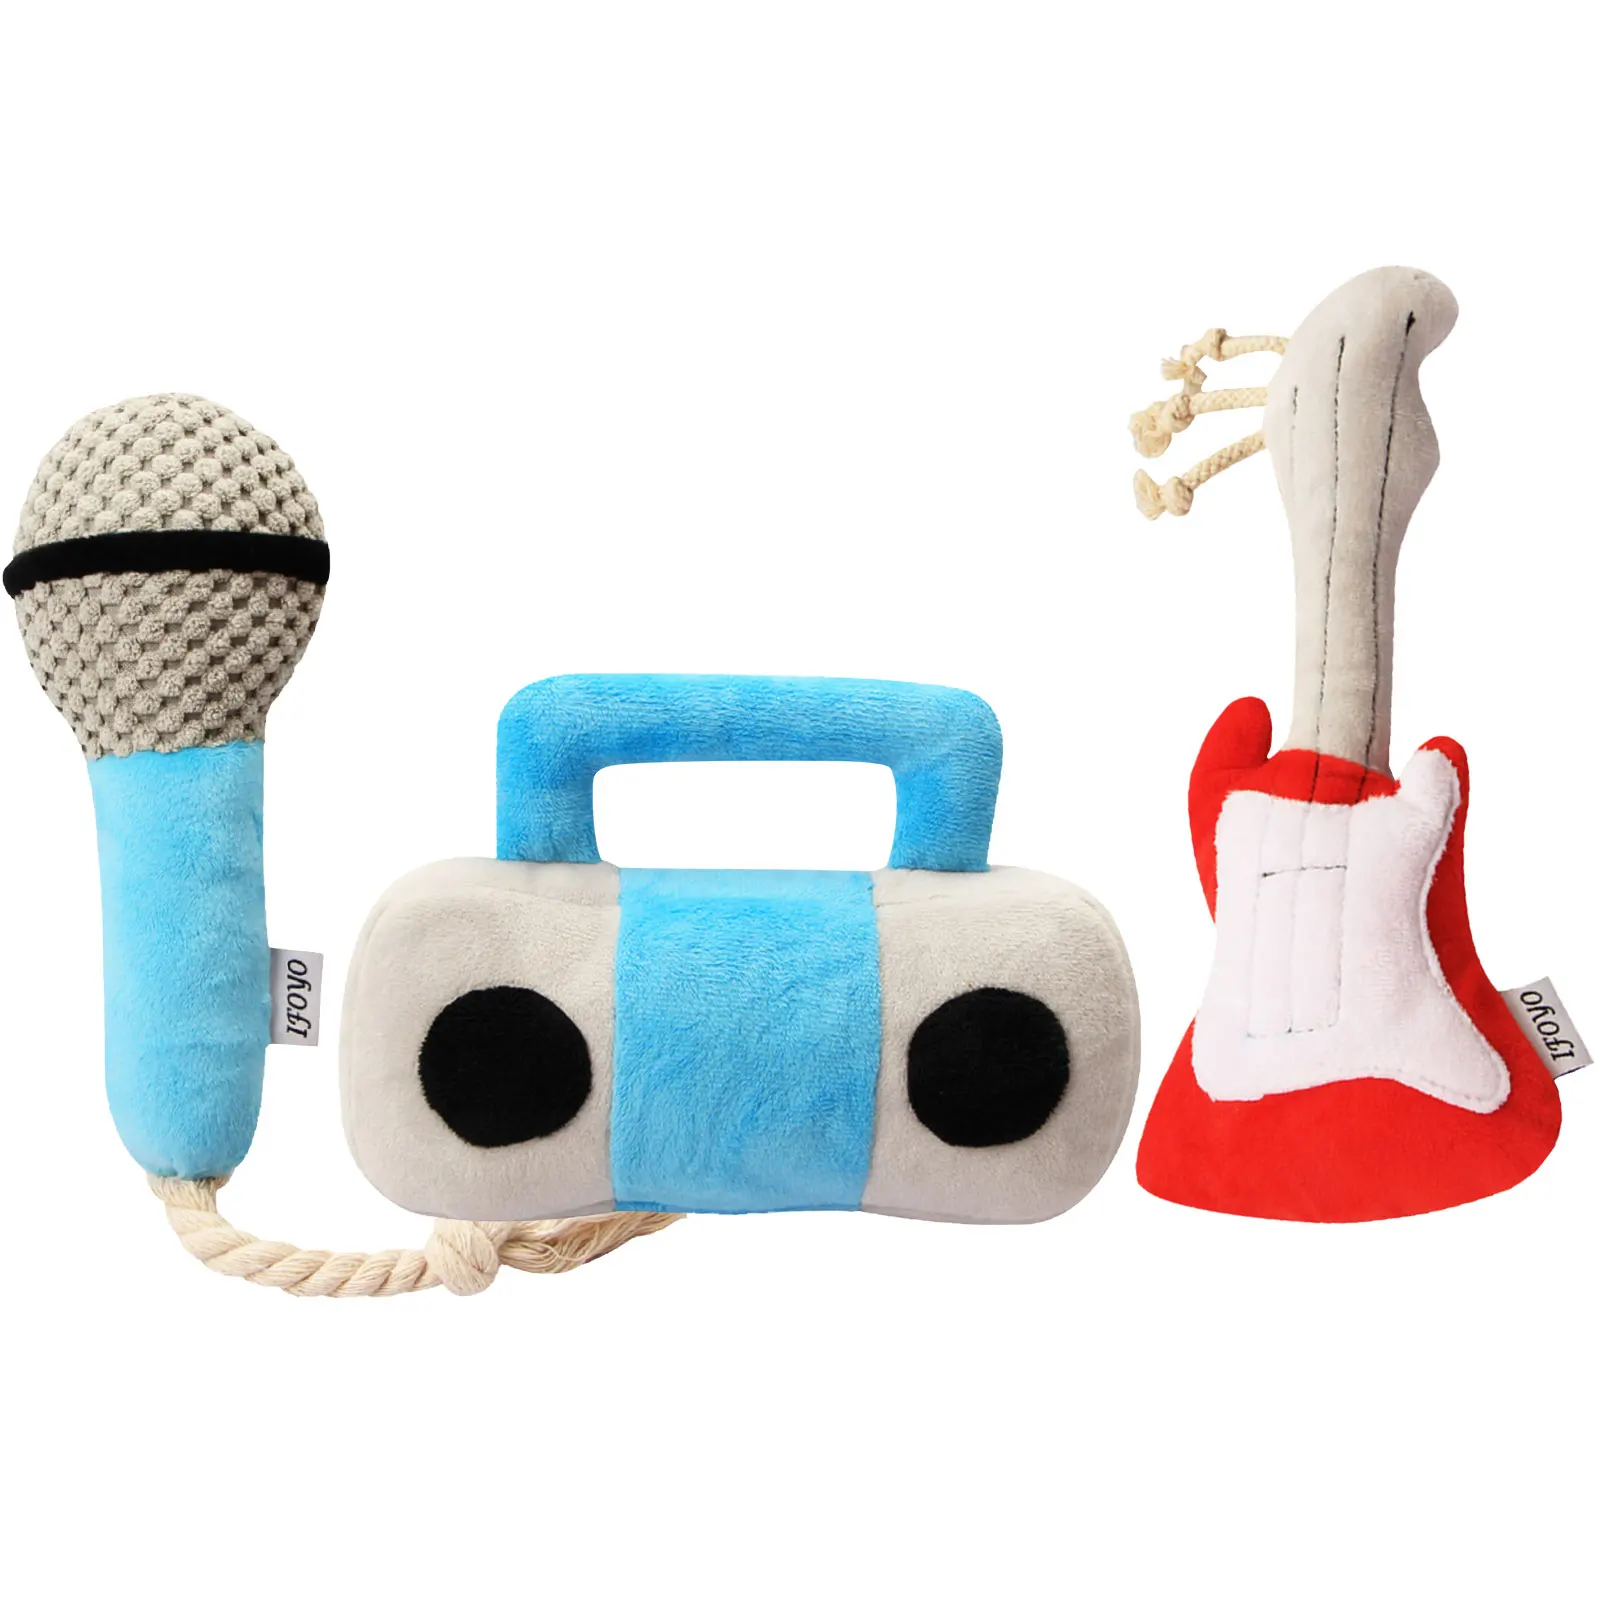 

Забавная игрушка для домашних животных жевать игрушка имитационный микрофон гитары Писк игрушки для Собака Щенок визгливый плюшевый моляр...